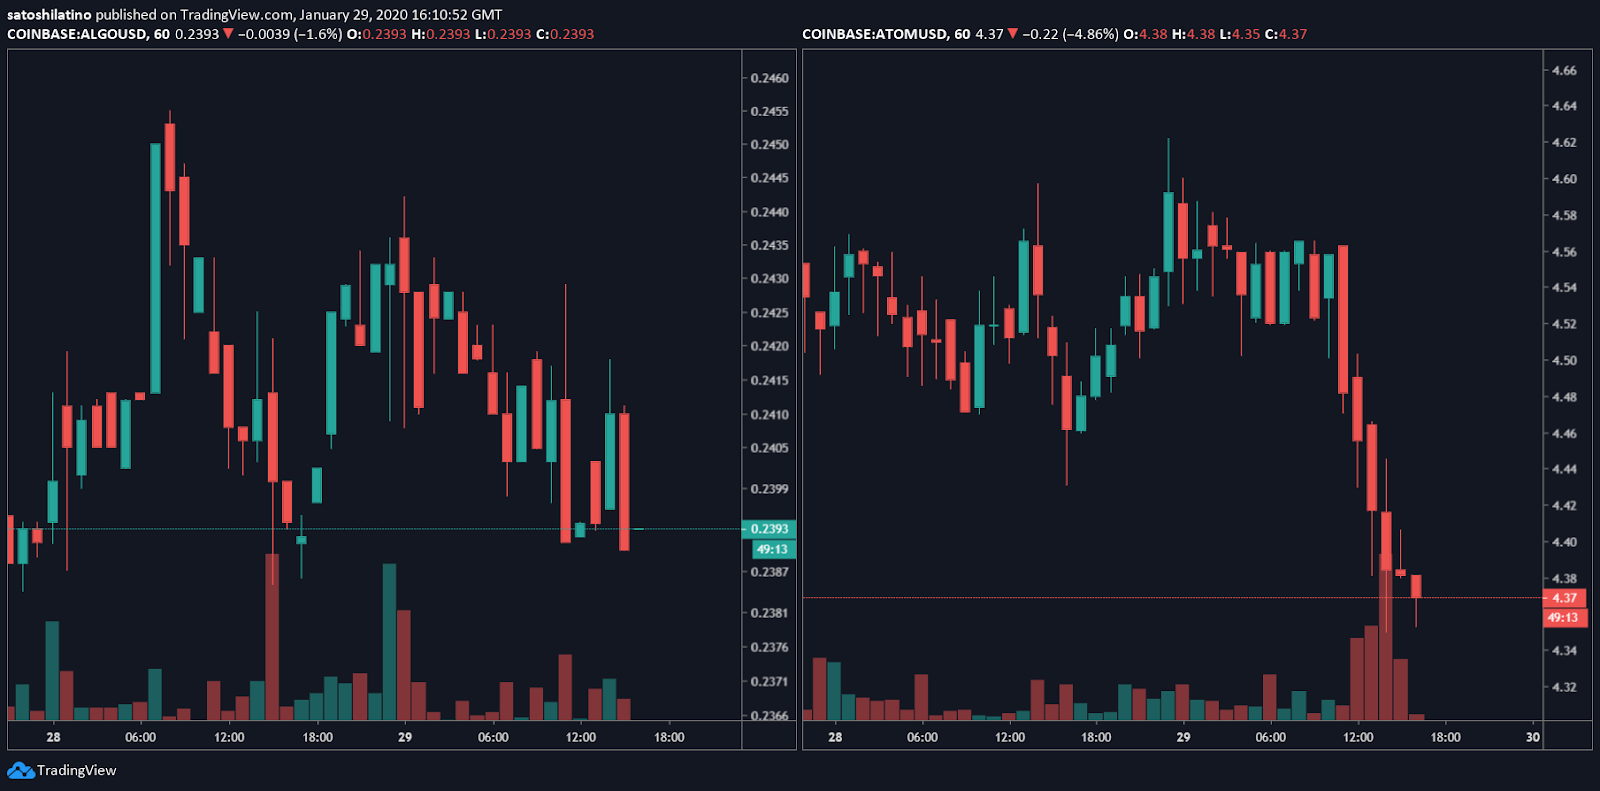 ALGO/USD and ATOM/USD charts by TradingView